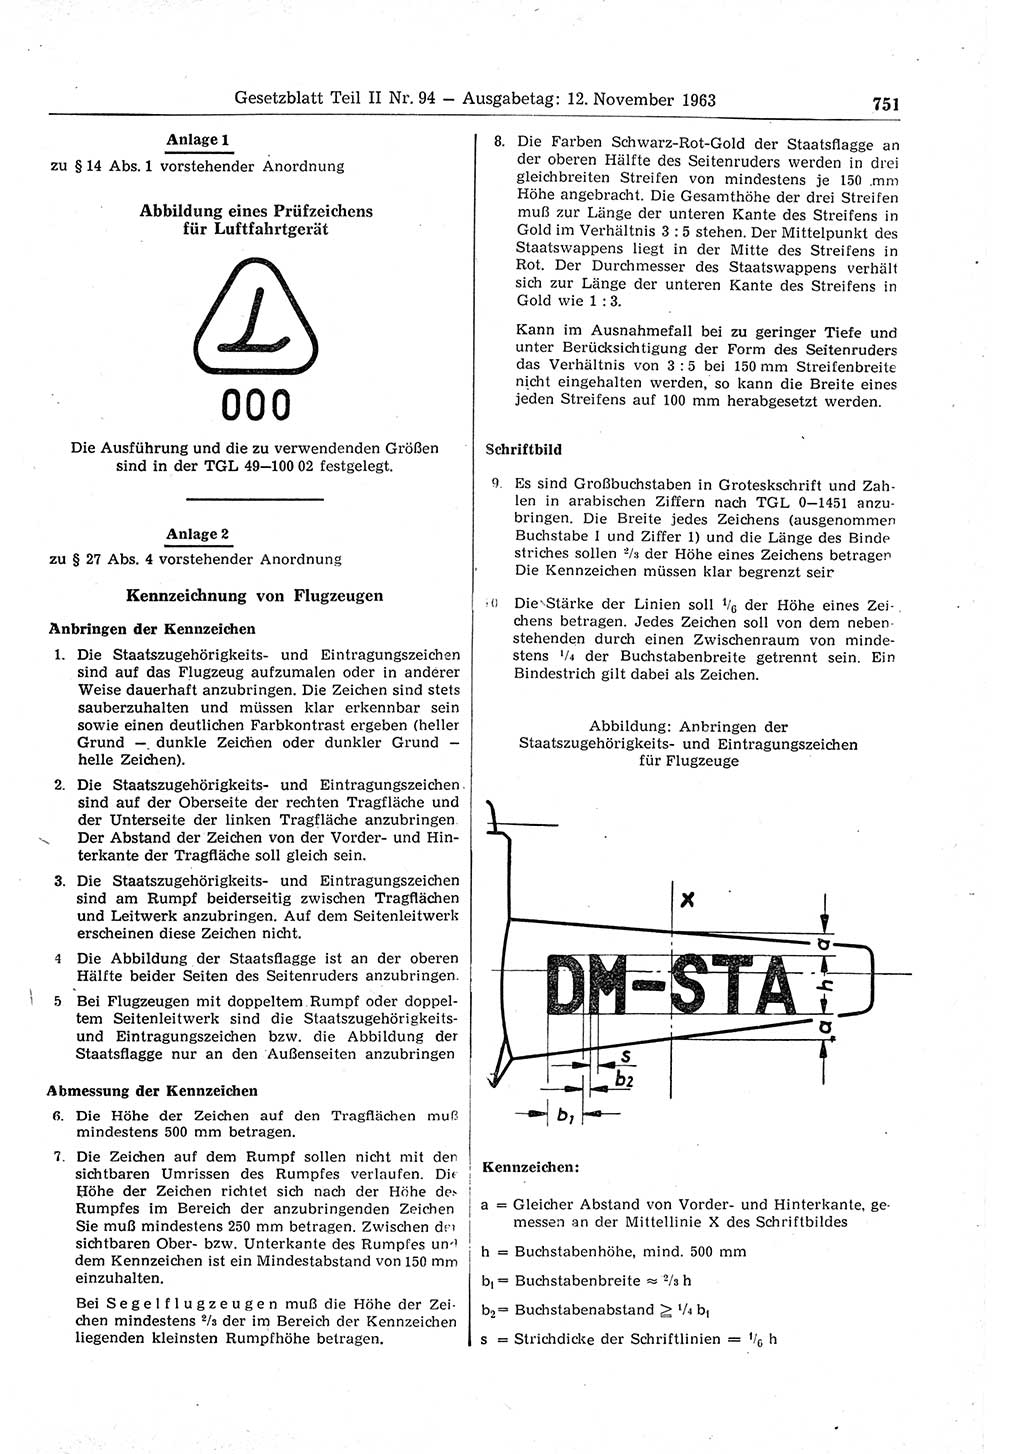 Gesetzblatt (GBl.) der Deutschen Demokratischen Republik (DDR) Teil ⅠⅠ 1963, Seite 751 (GBl. DDR ⅠⅠ 1963, S. 751)